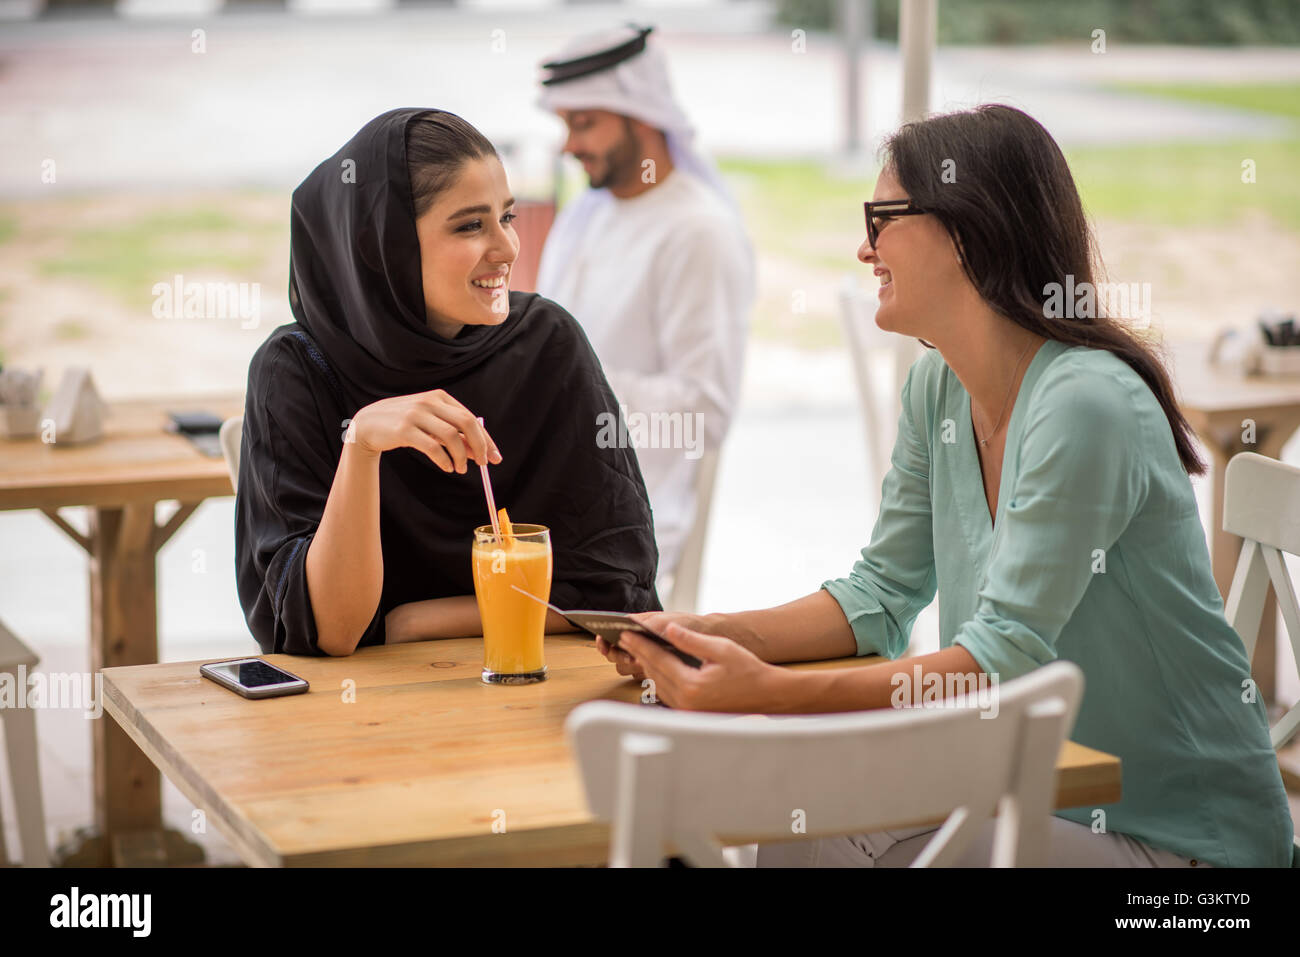 Junge Naher Osten Frau tragen traditionelle Kleidung im Gespräch mit Freundin im Café, Dubai, Vereinigte Arabische Emirate Stockfoto